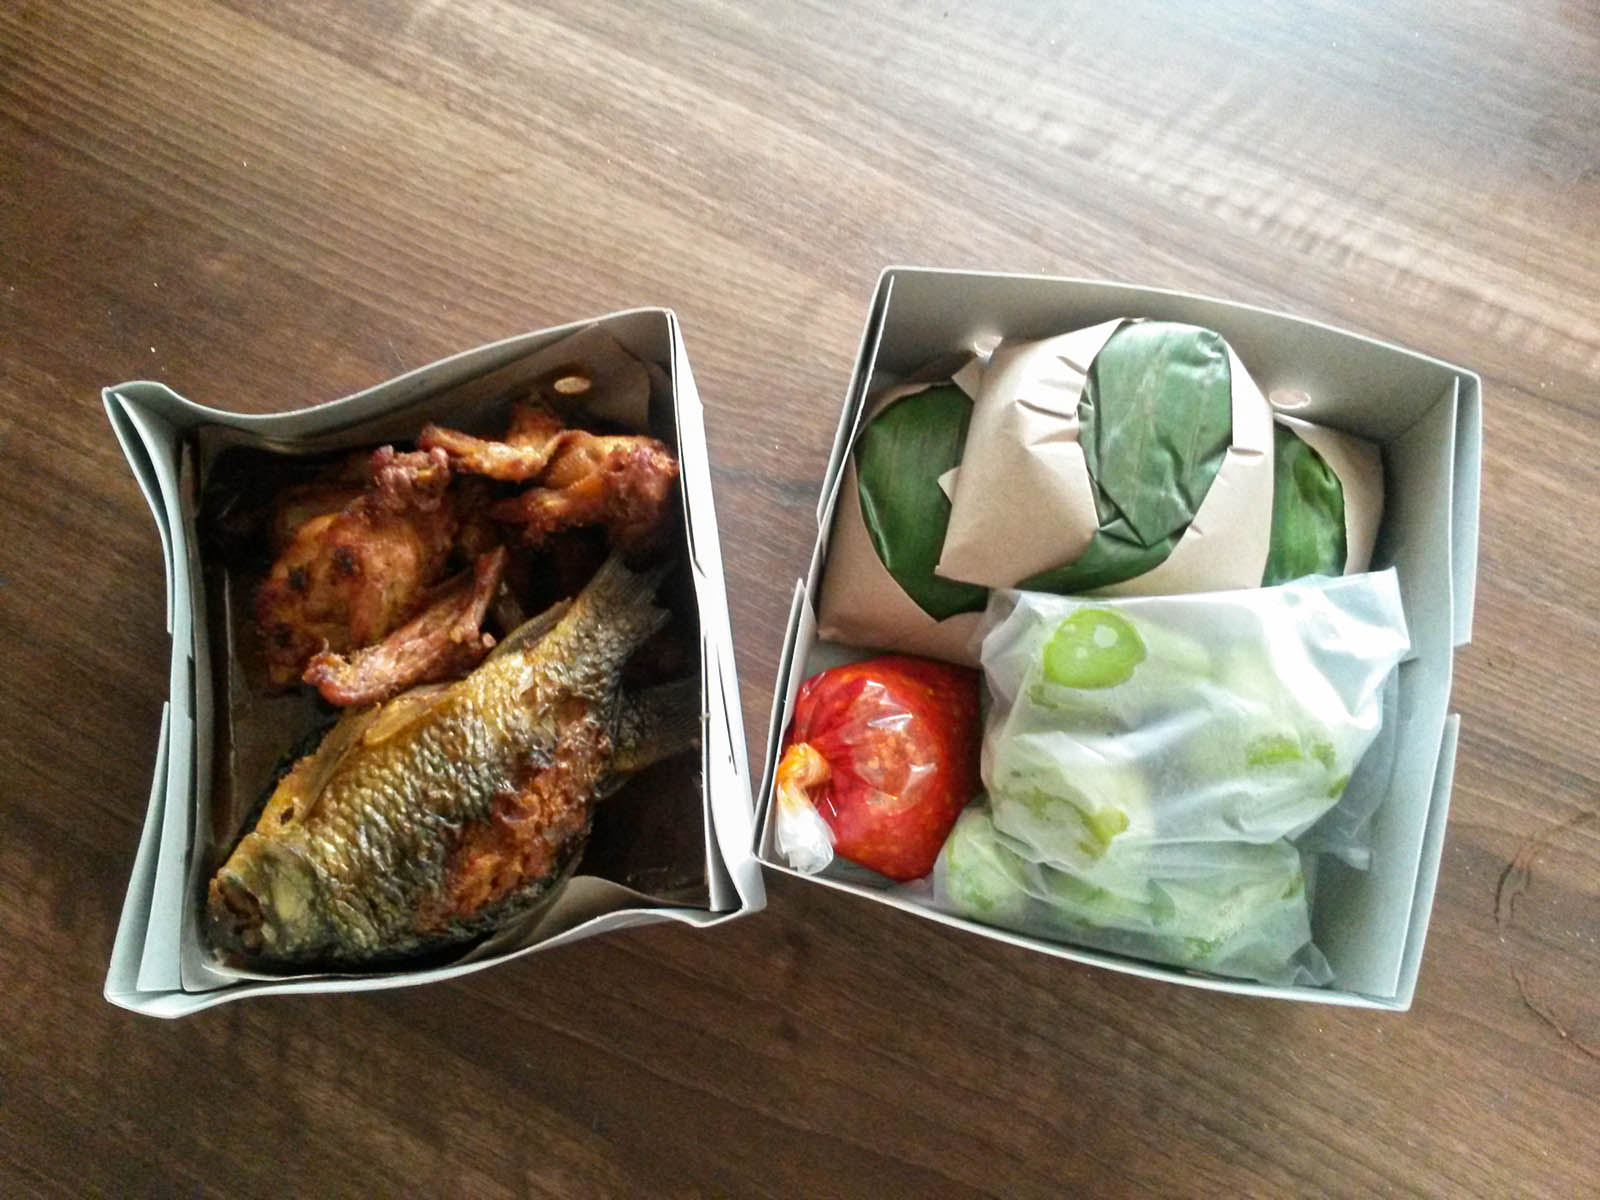 Jakarta vedere e fare: una scatola con lo street food.